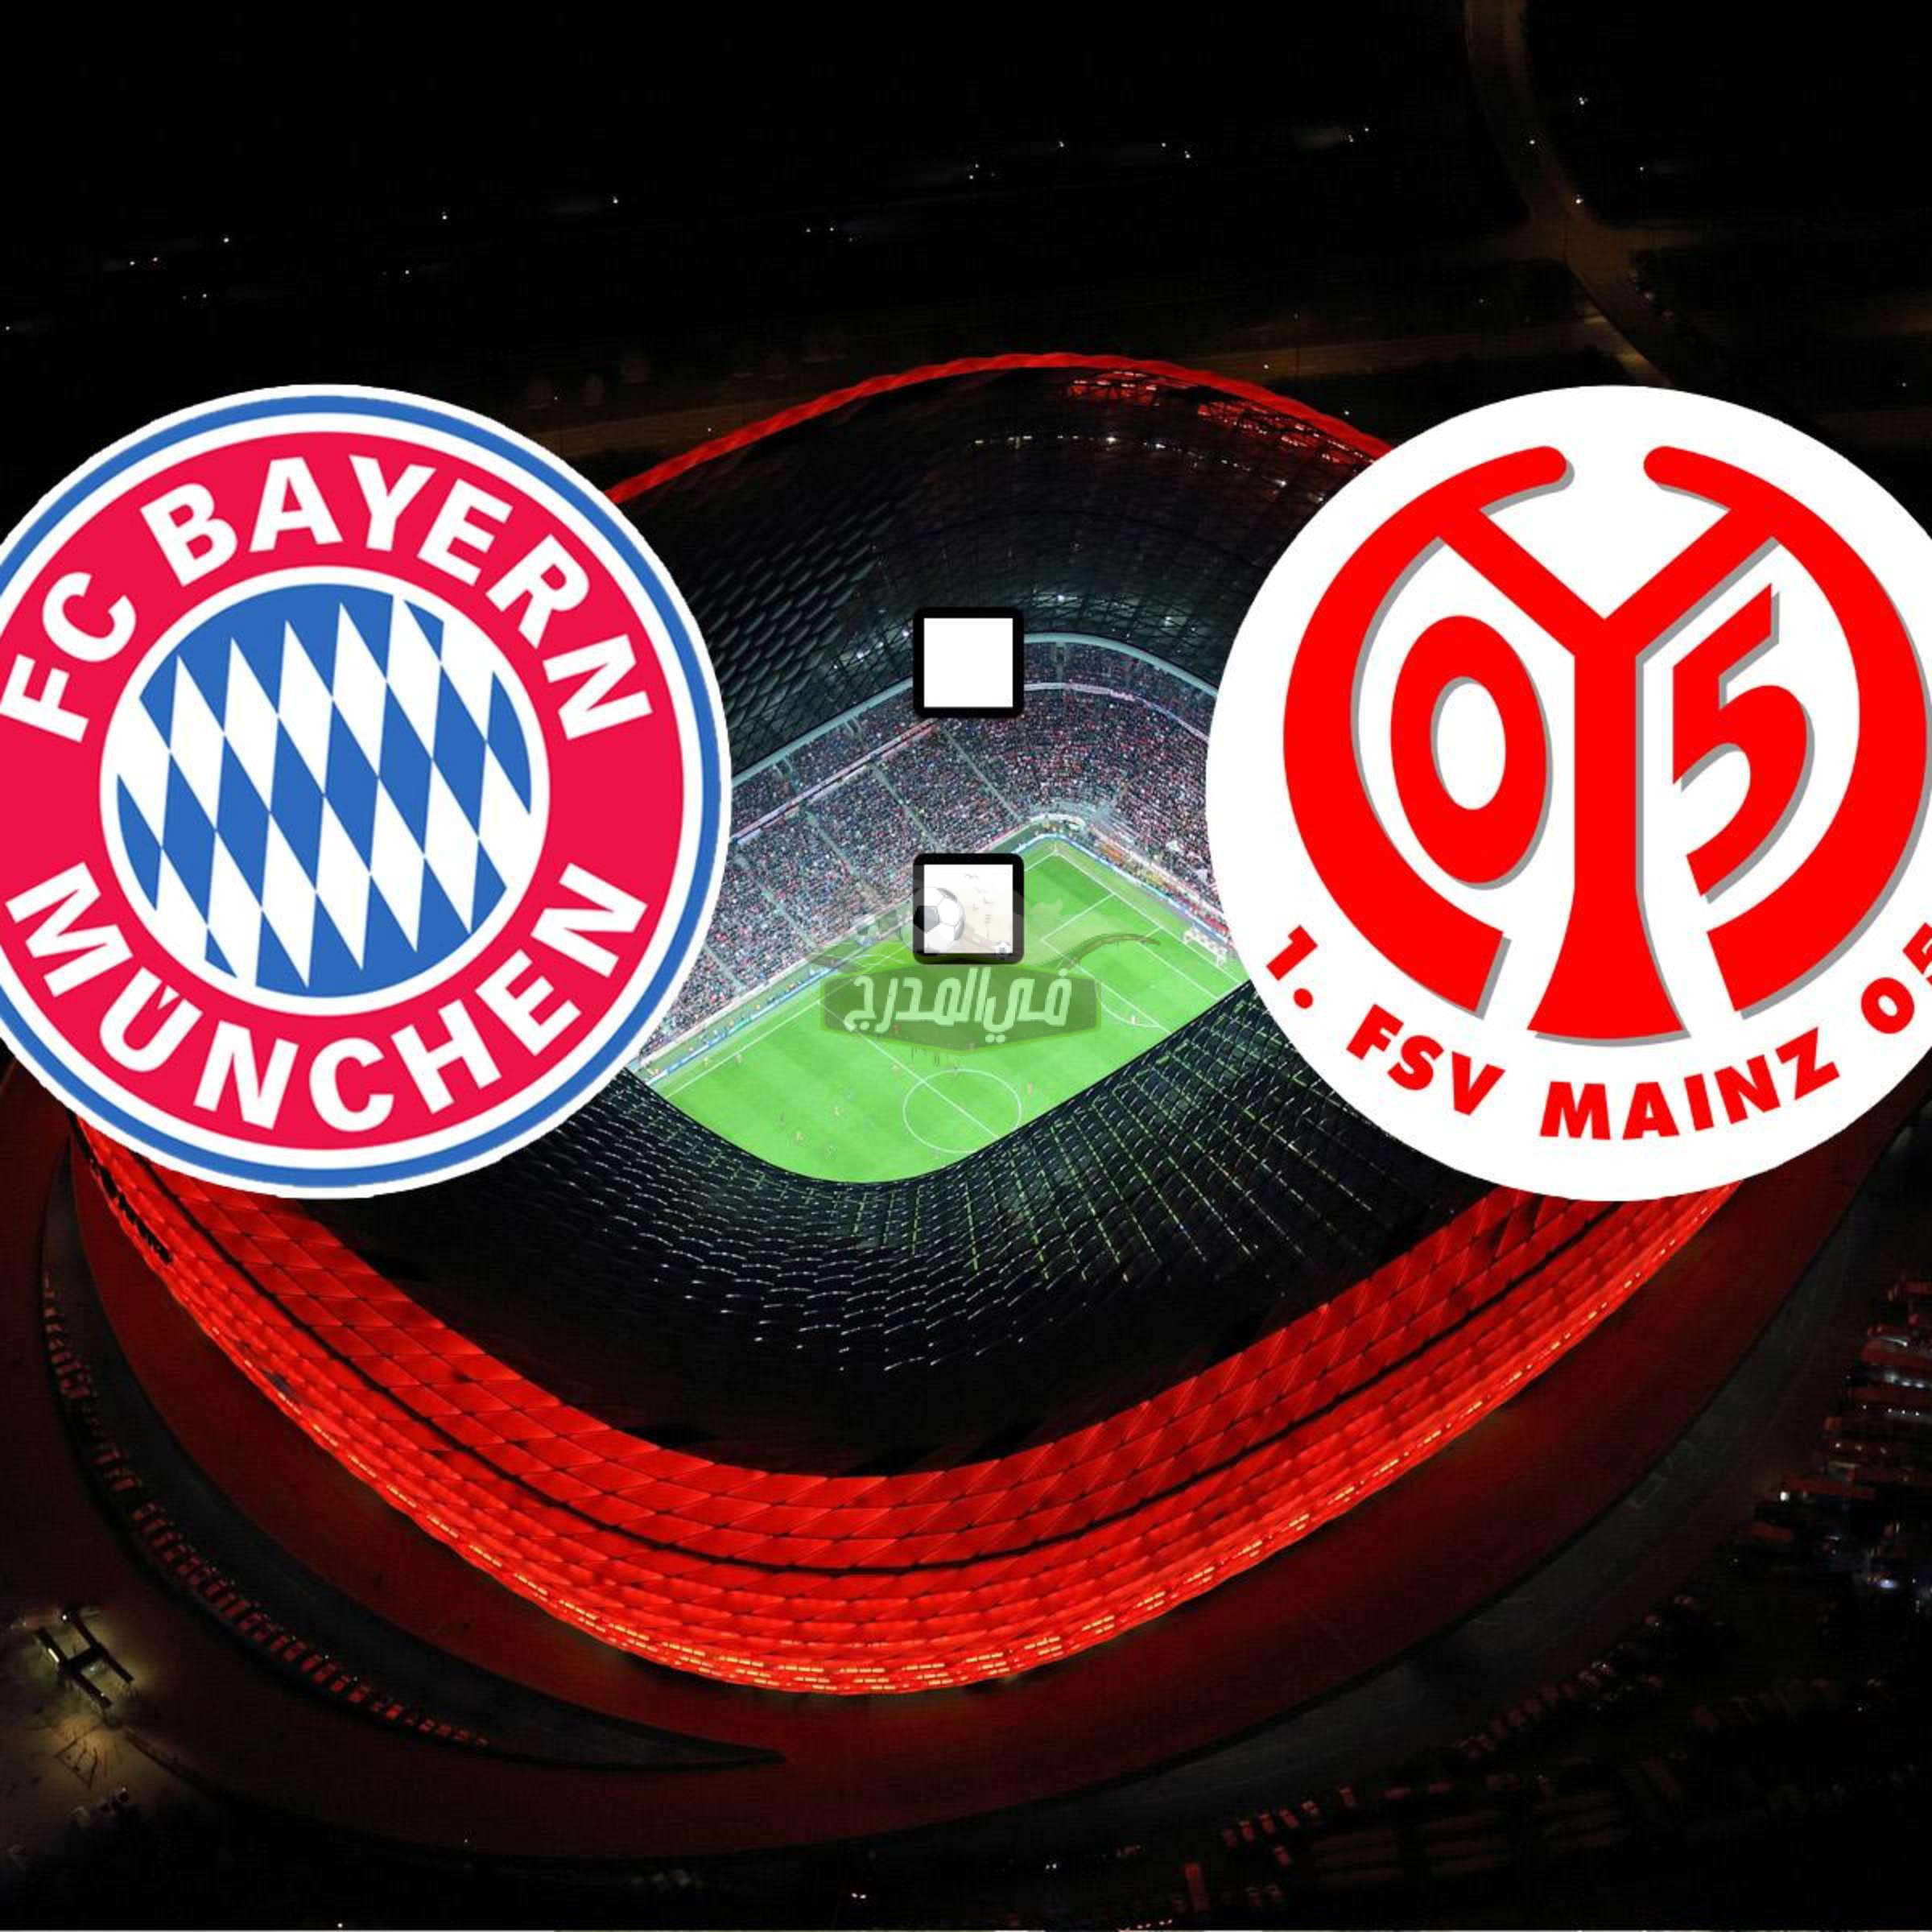 موعد مباراة بايرن ميونخ وماينز Bayern Munich vs Mainz في الدوري الألماني والقنوات الناقلة